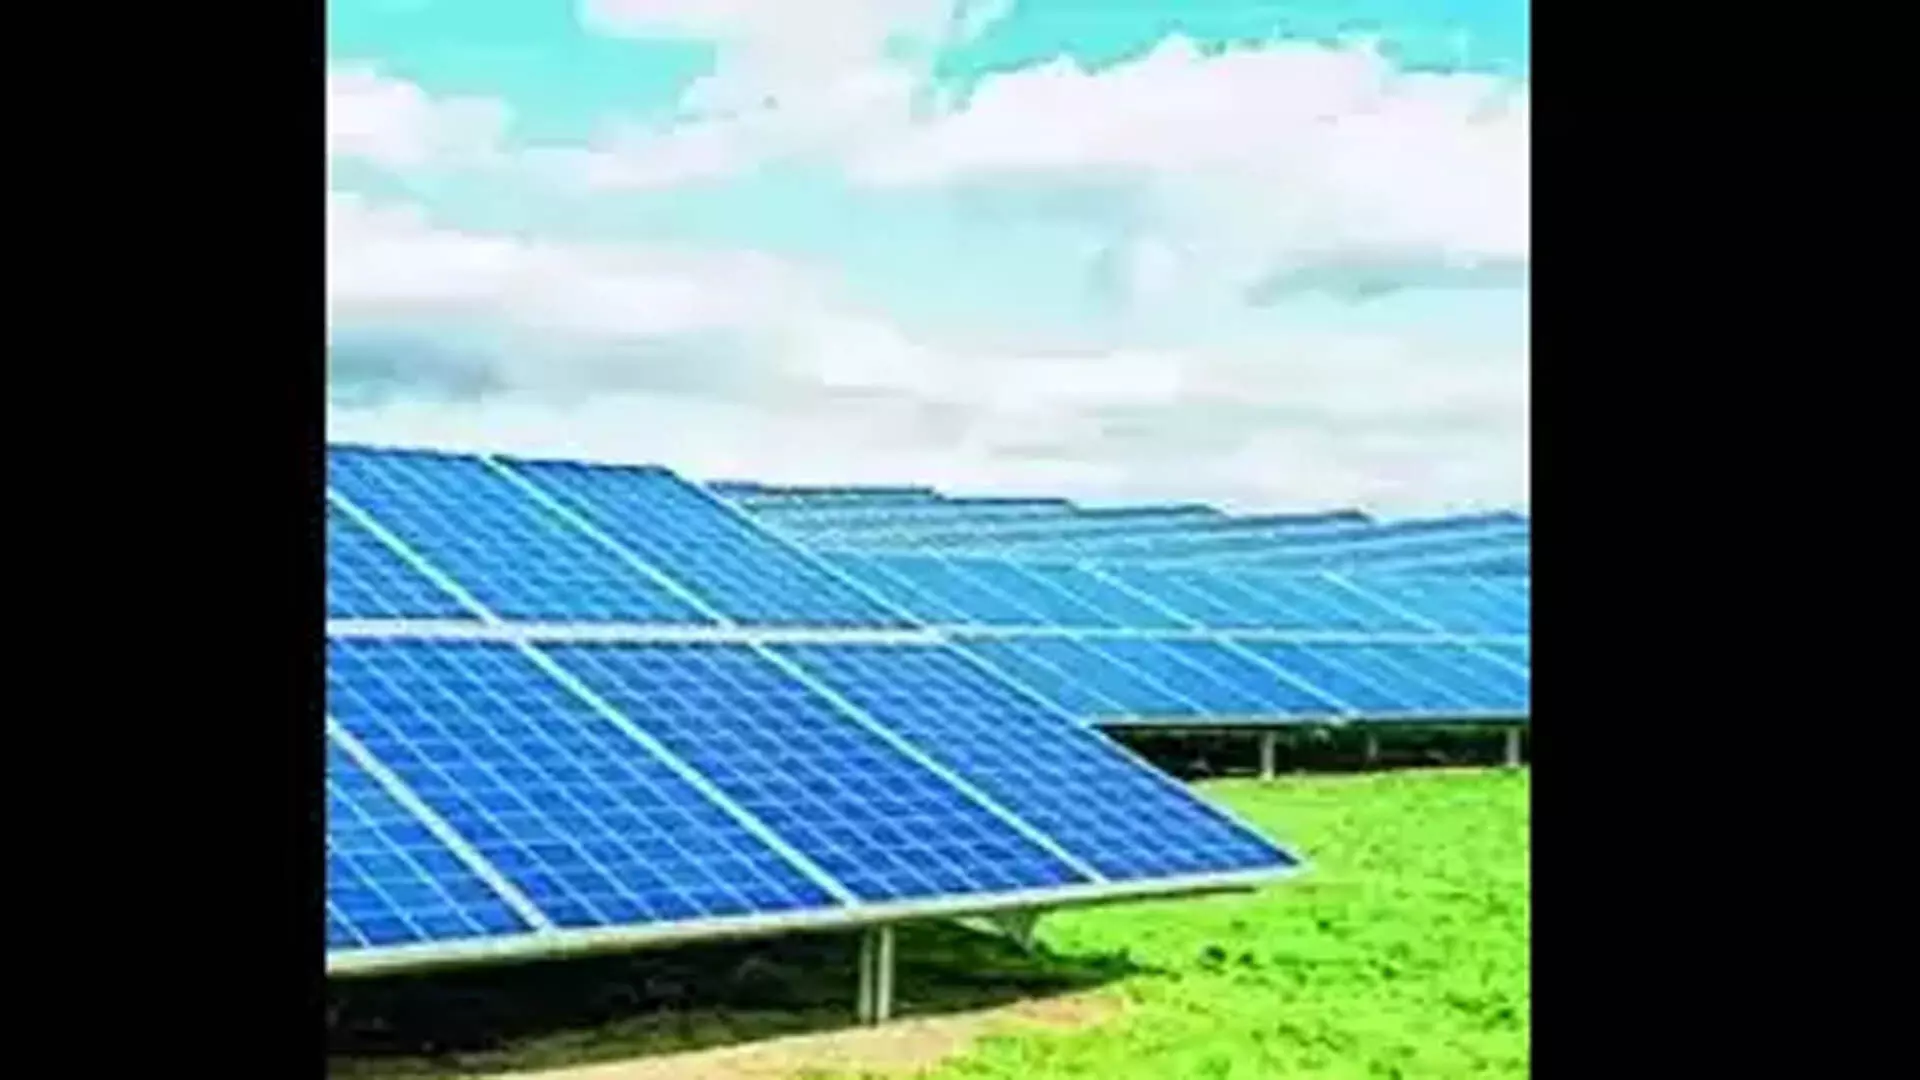 सोलर एनर्जी कॉरपोरेशन ऑफ इंडिया से 25 वर्षों के लिए 500 मेगावाट सौर ऊर्जा खरीदेगा